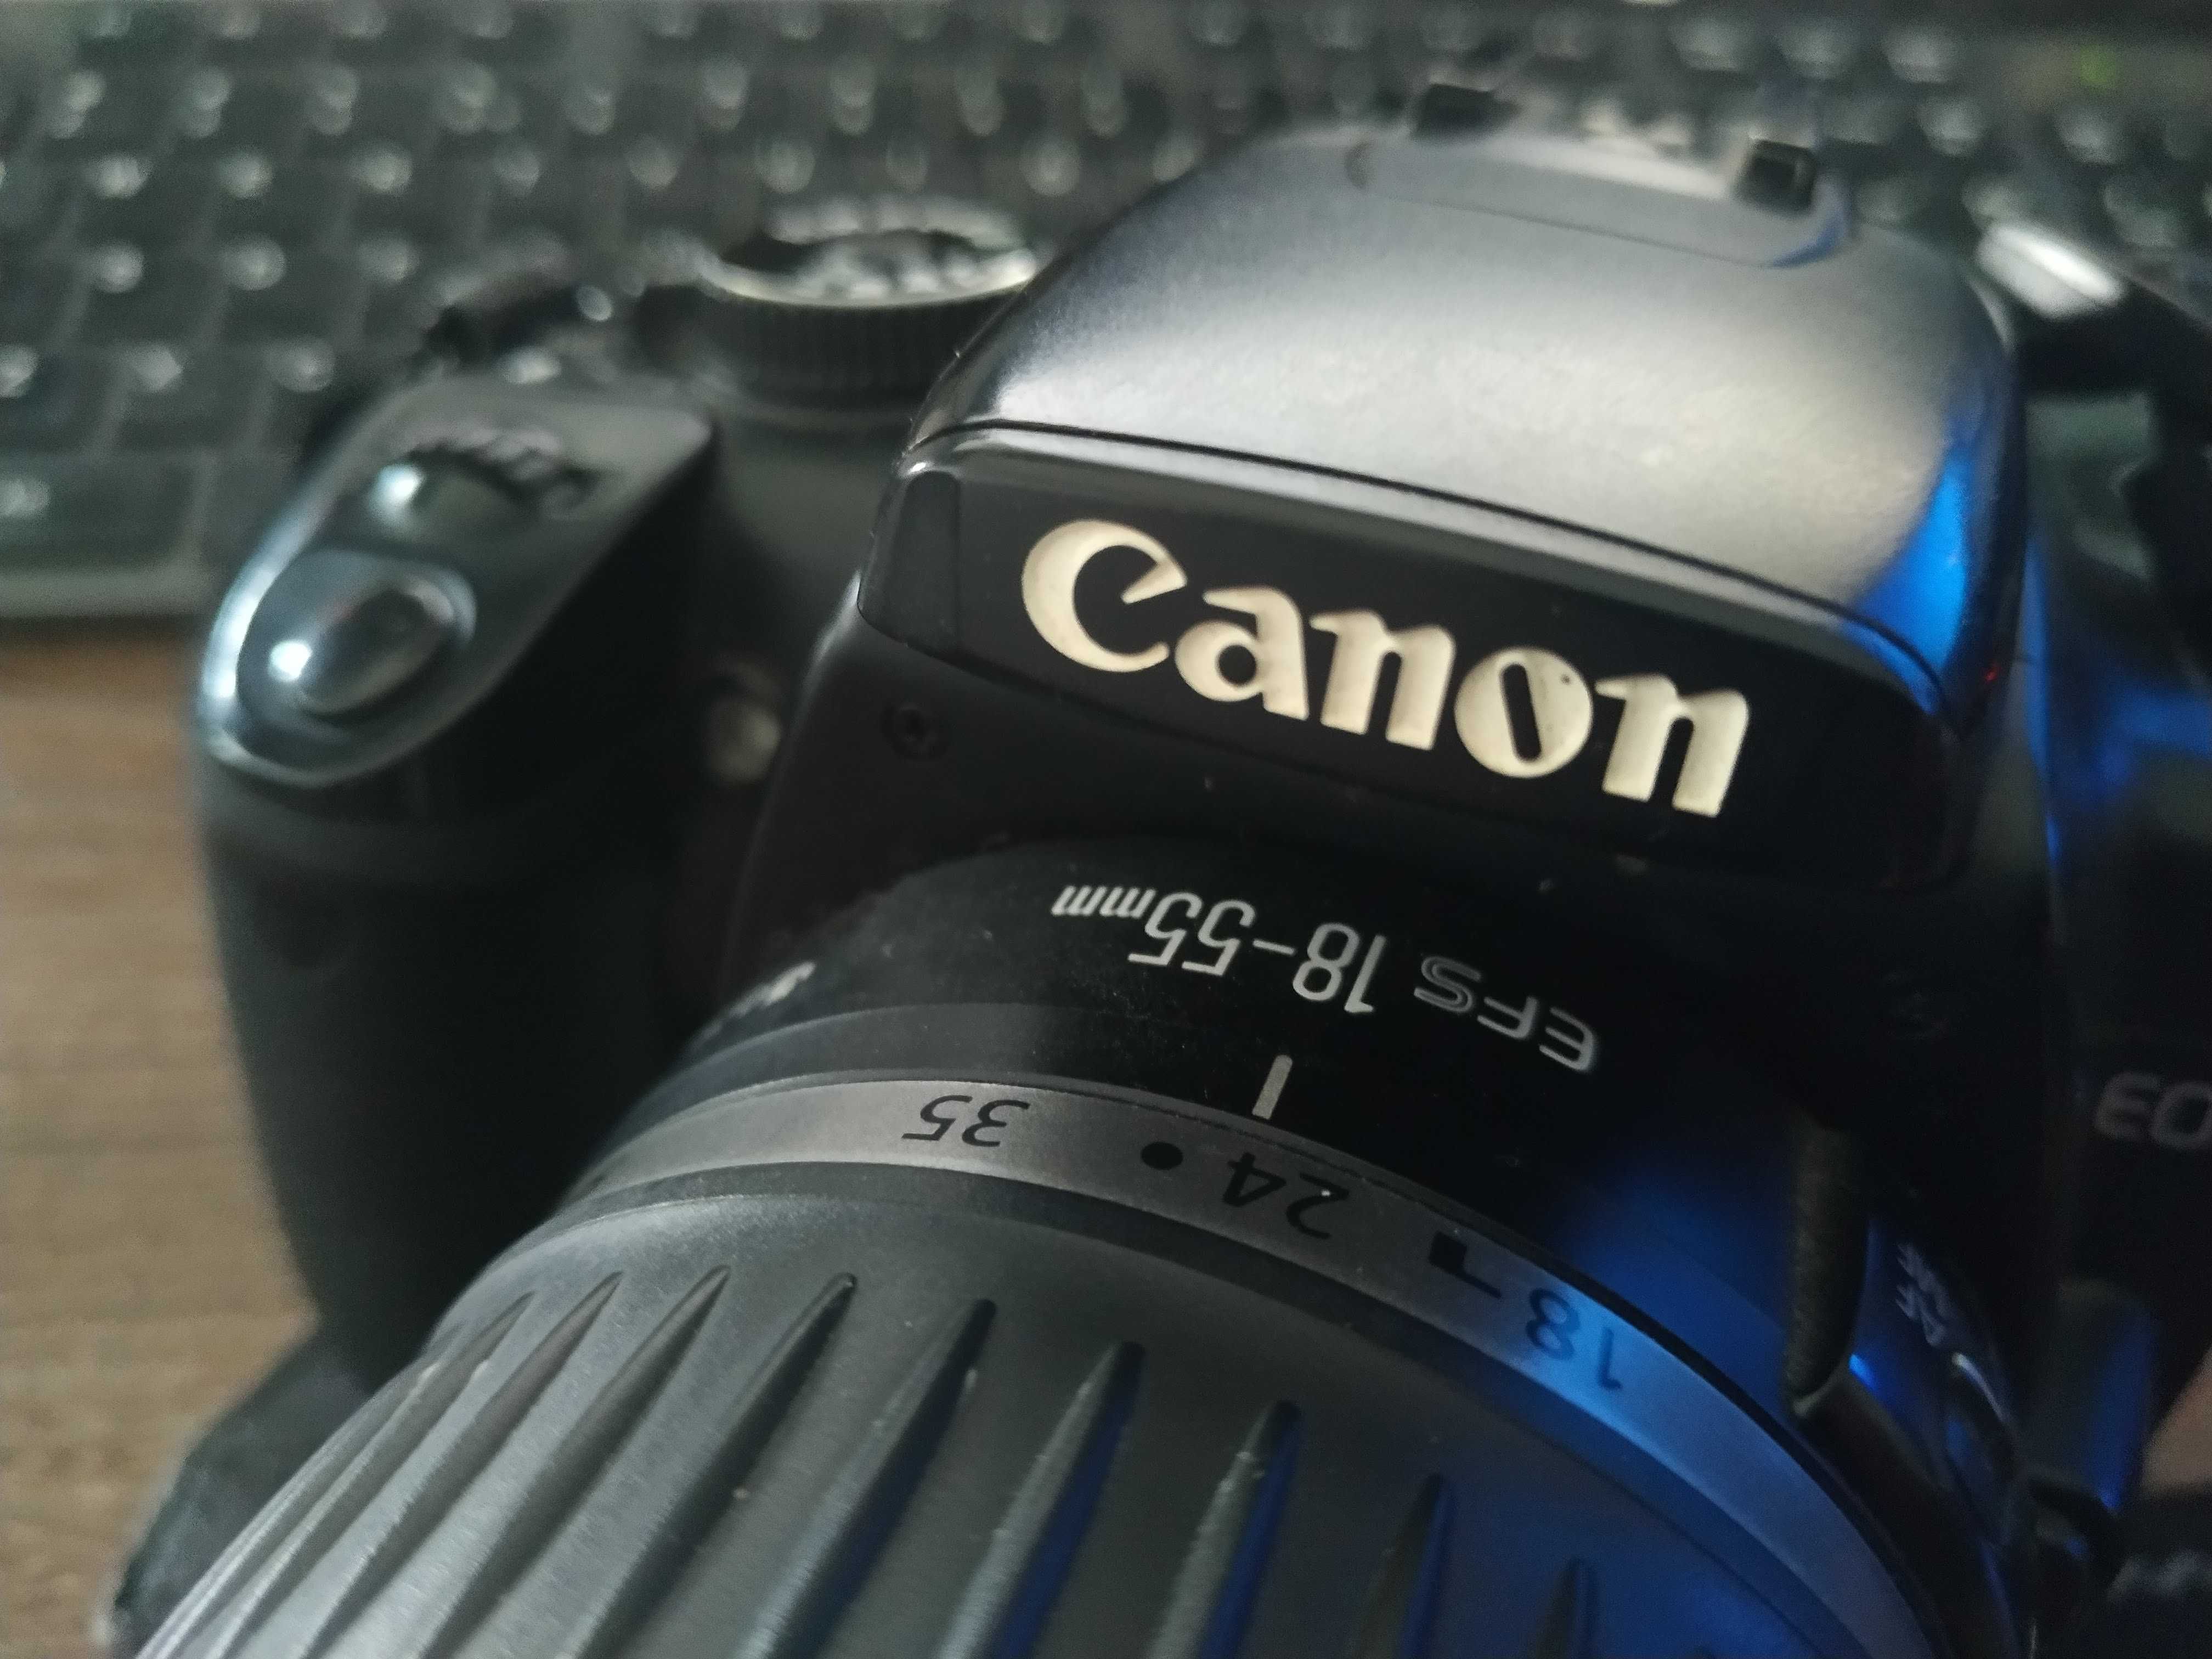 Canon Rebel XTi (Canon 400D) + obiektyw EFS 18-55